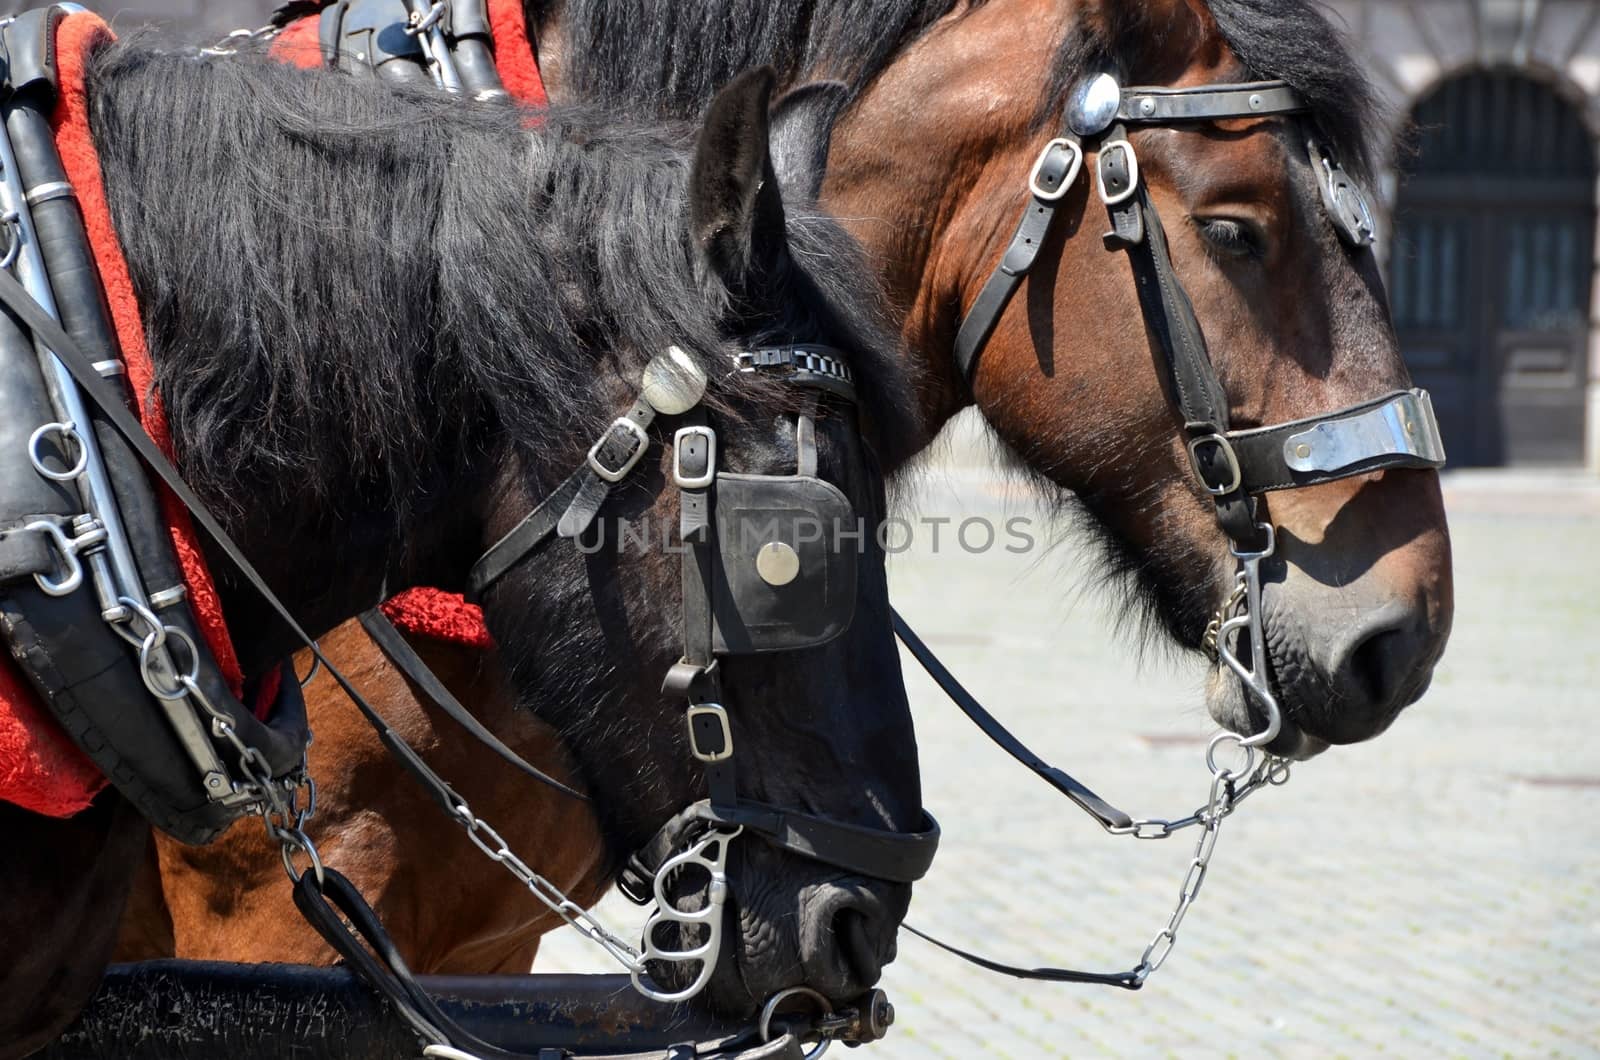 Work horses in Bruges, Belgium.